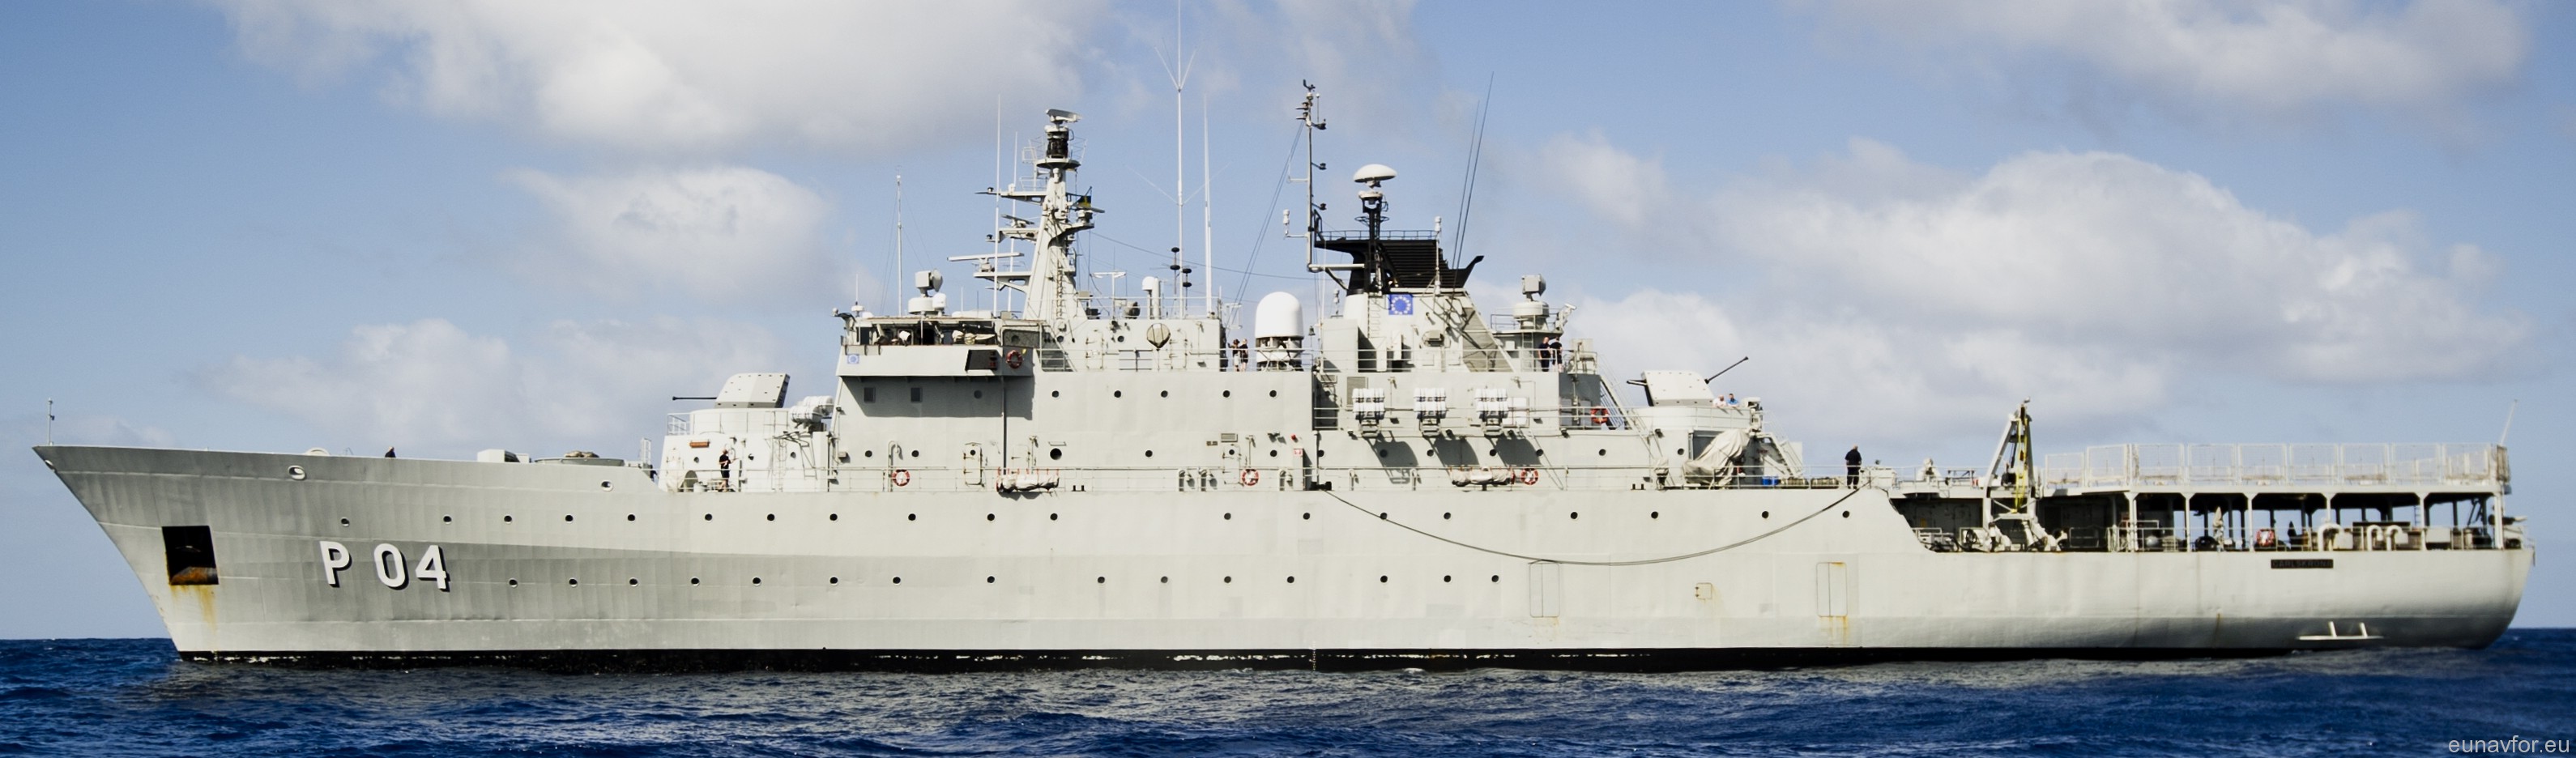 p04 hswms carlskrona hms ocean patrol vessel opv swedish navy svenska marinen försvarsmakten 15 eunavfor